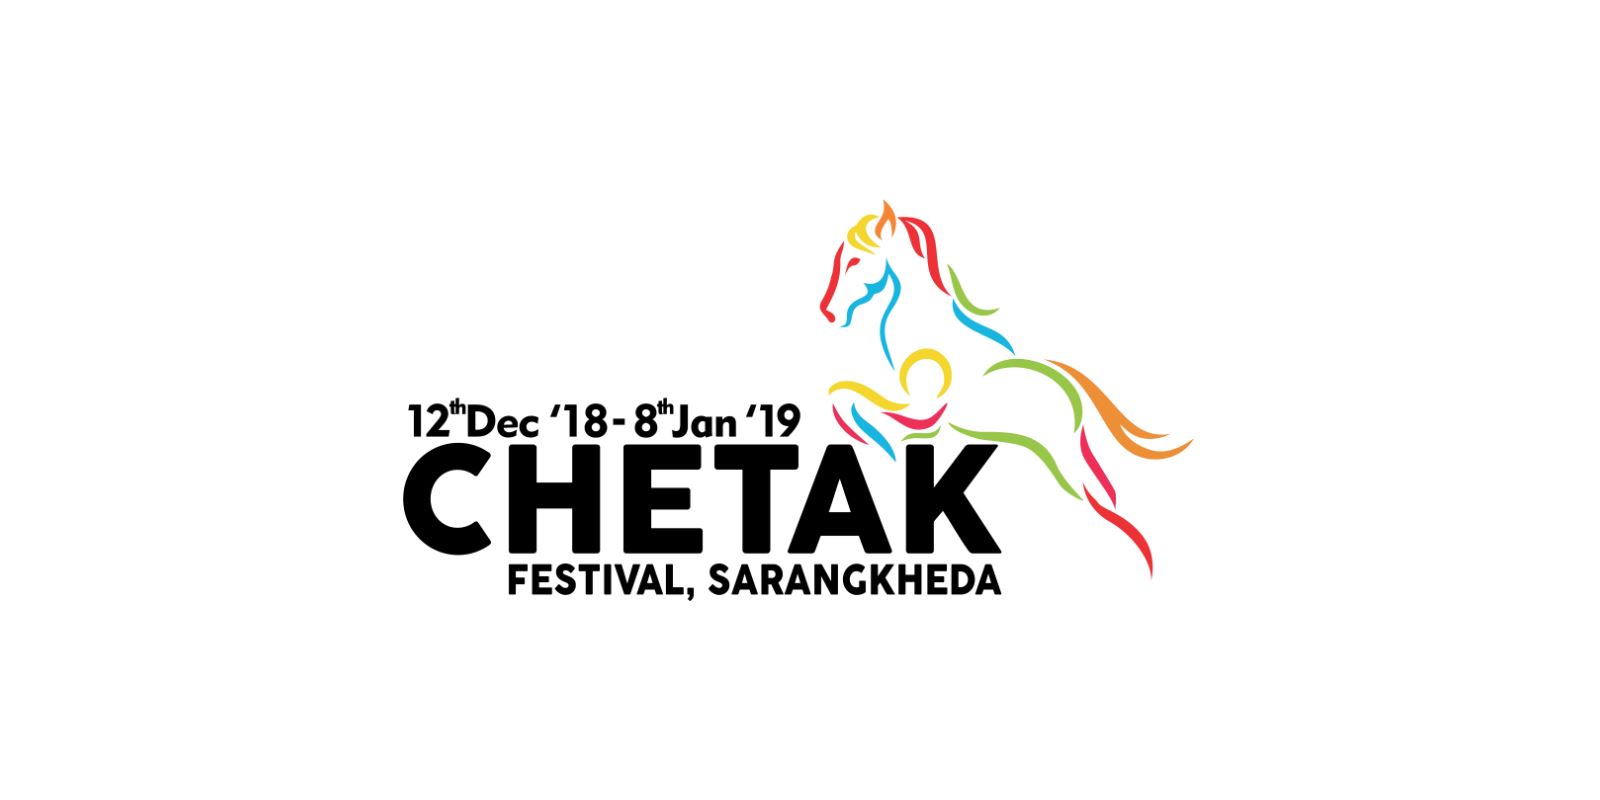 Chetak Festival Sarangkheda